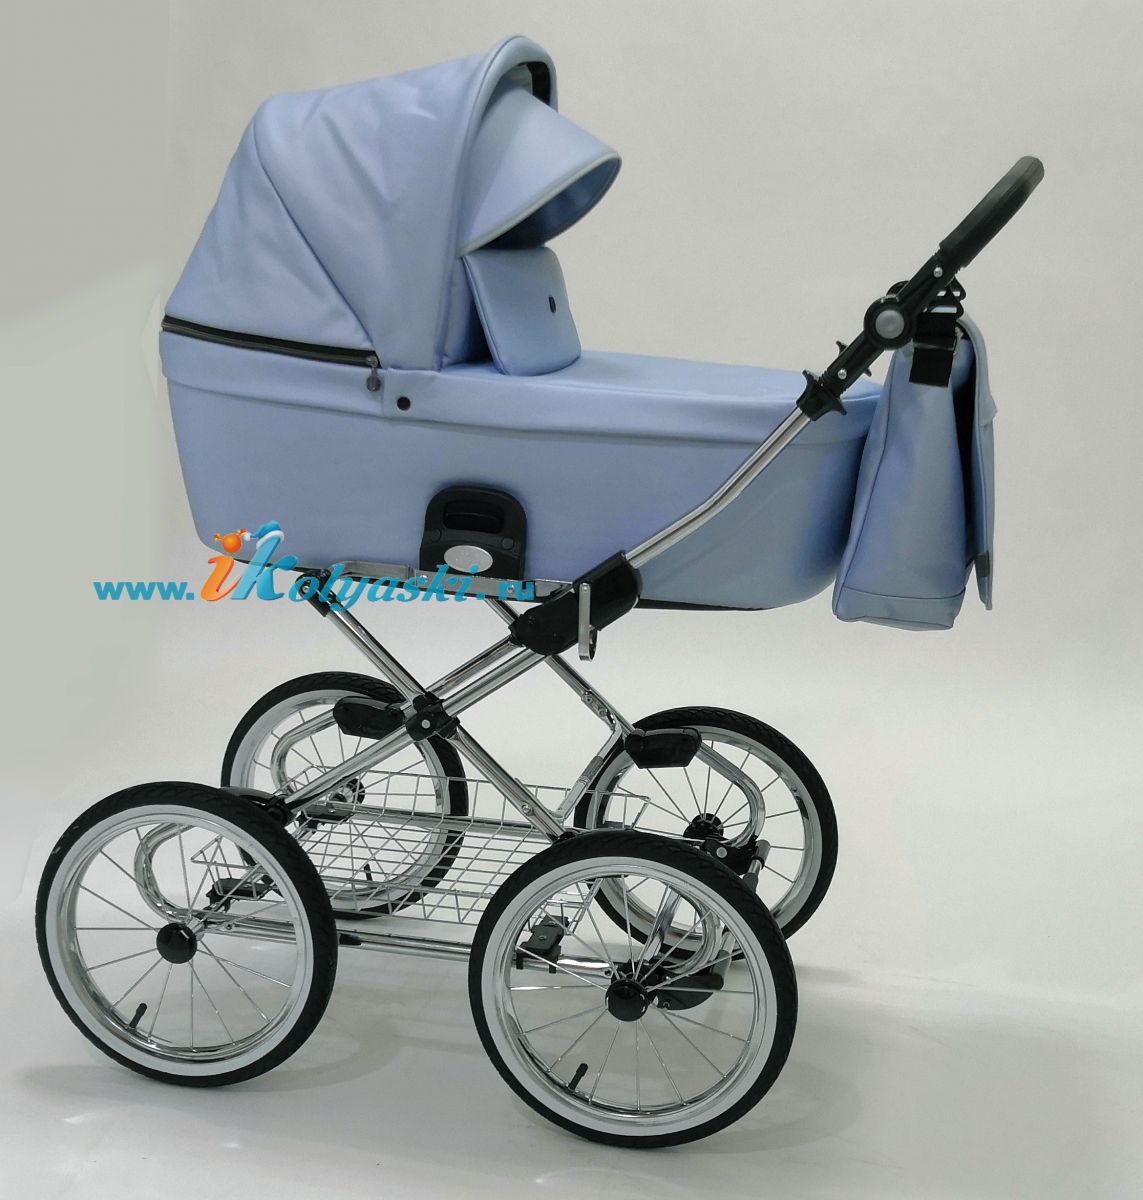 Roan Coss Classic коляска для новорожденных 3 в 1 на больших колесах новые цвета 2020 - купить в интернет-магазине Иколяски в Москве с доставкой по РФ - цвет Blue Pearl